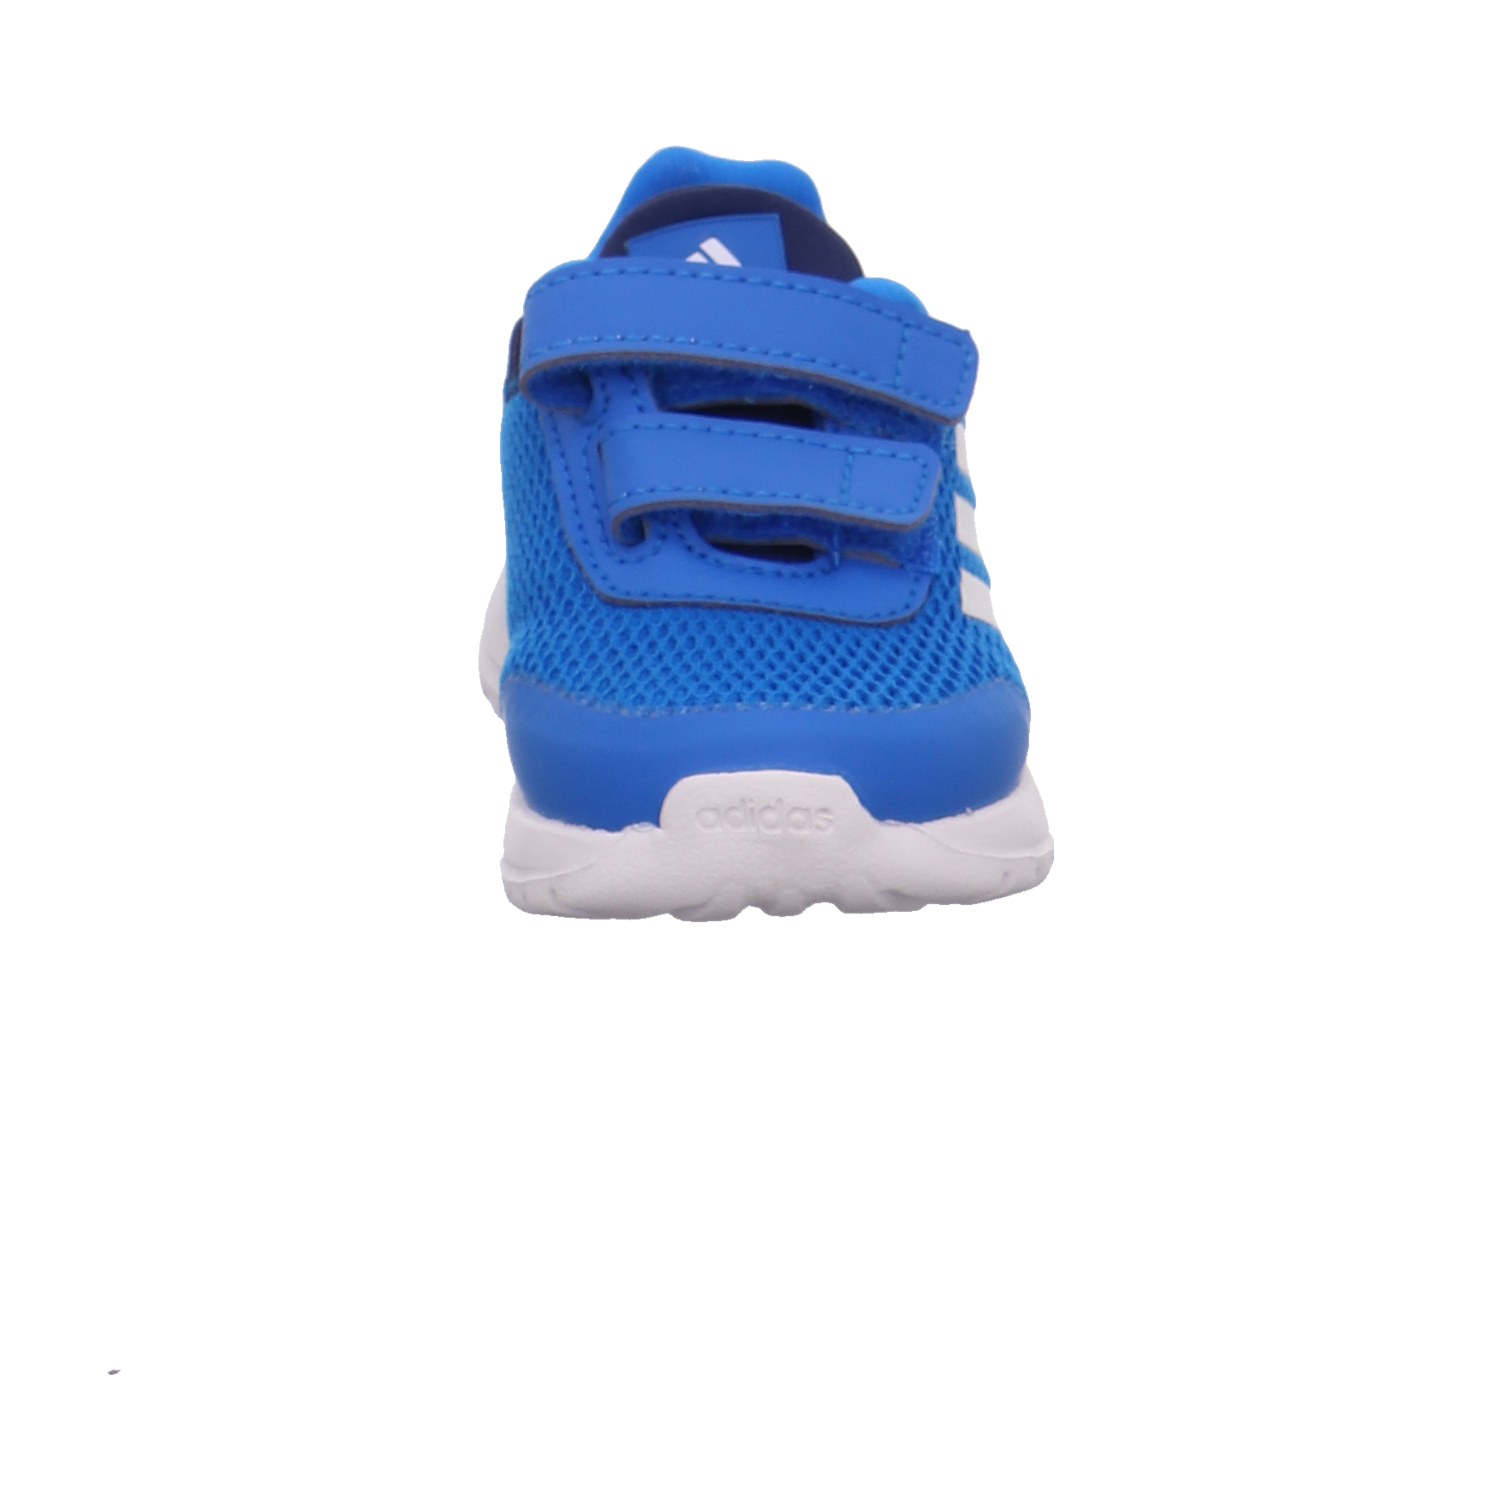 Adidas Halbschuhe blau Bild3